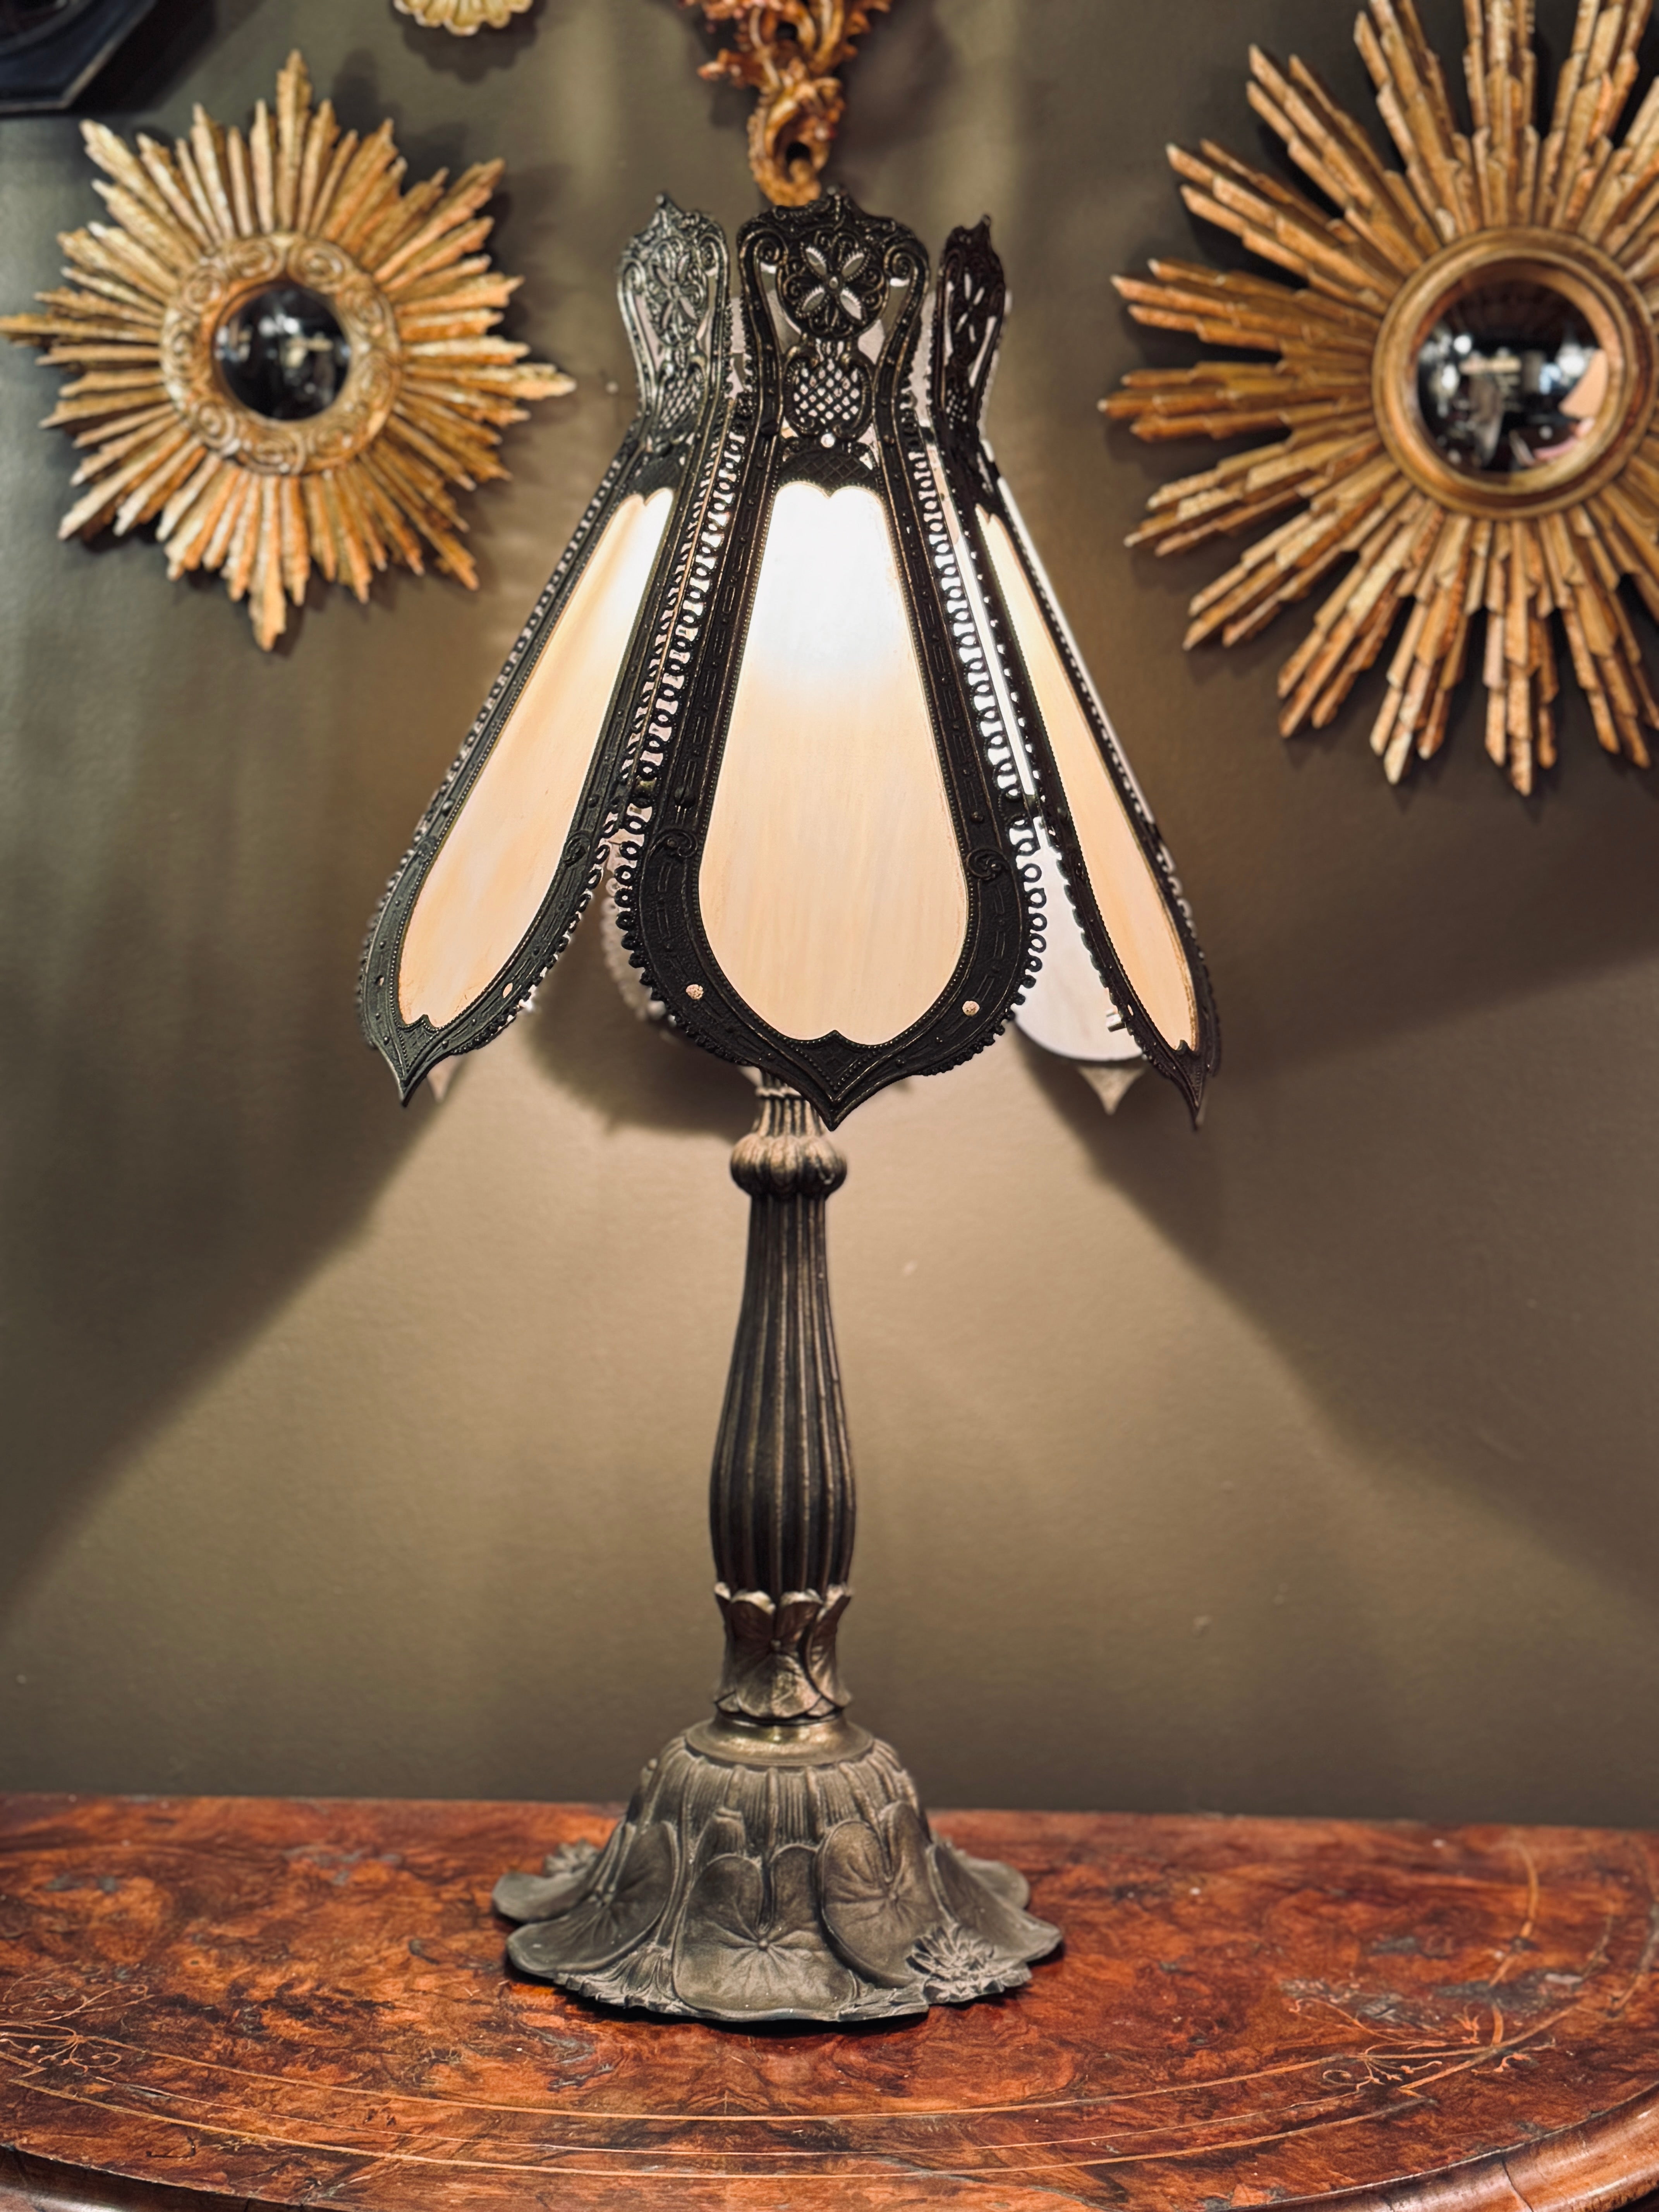 Vintage Brass Art Nouveau Lamp